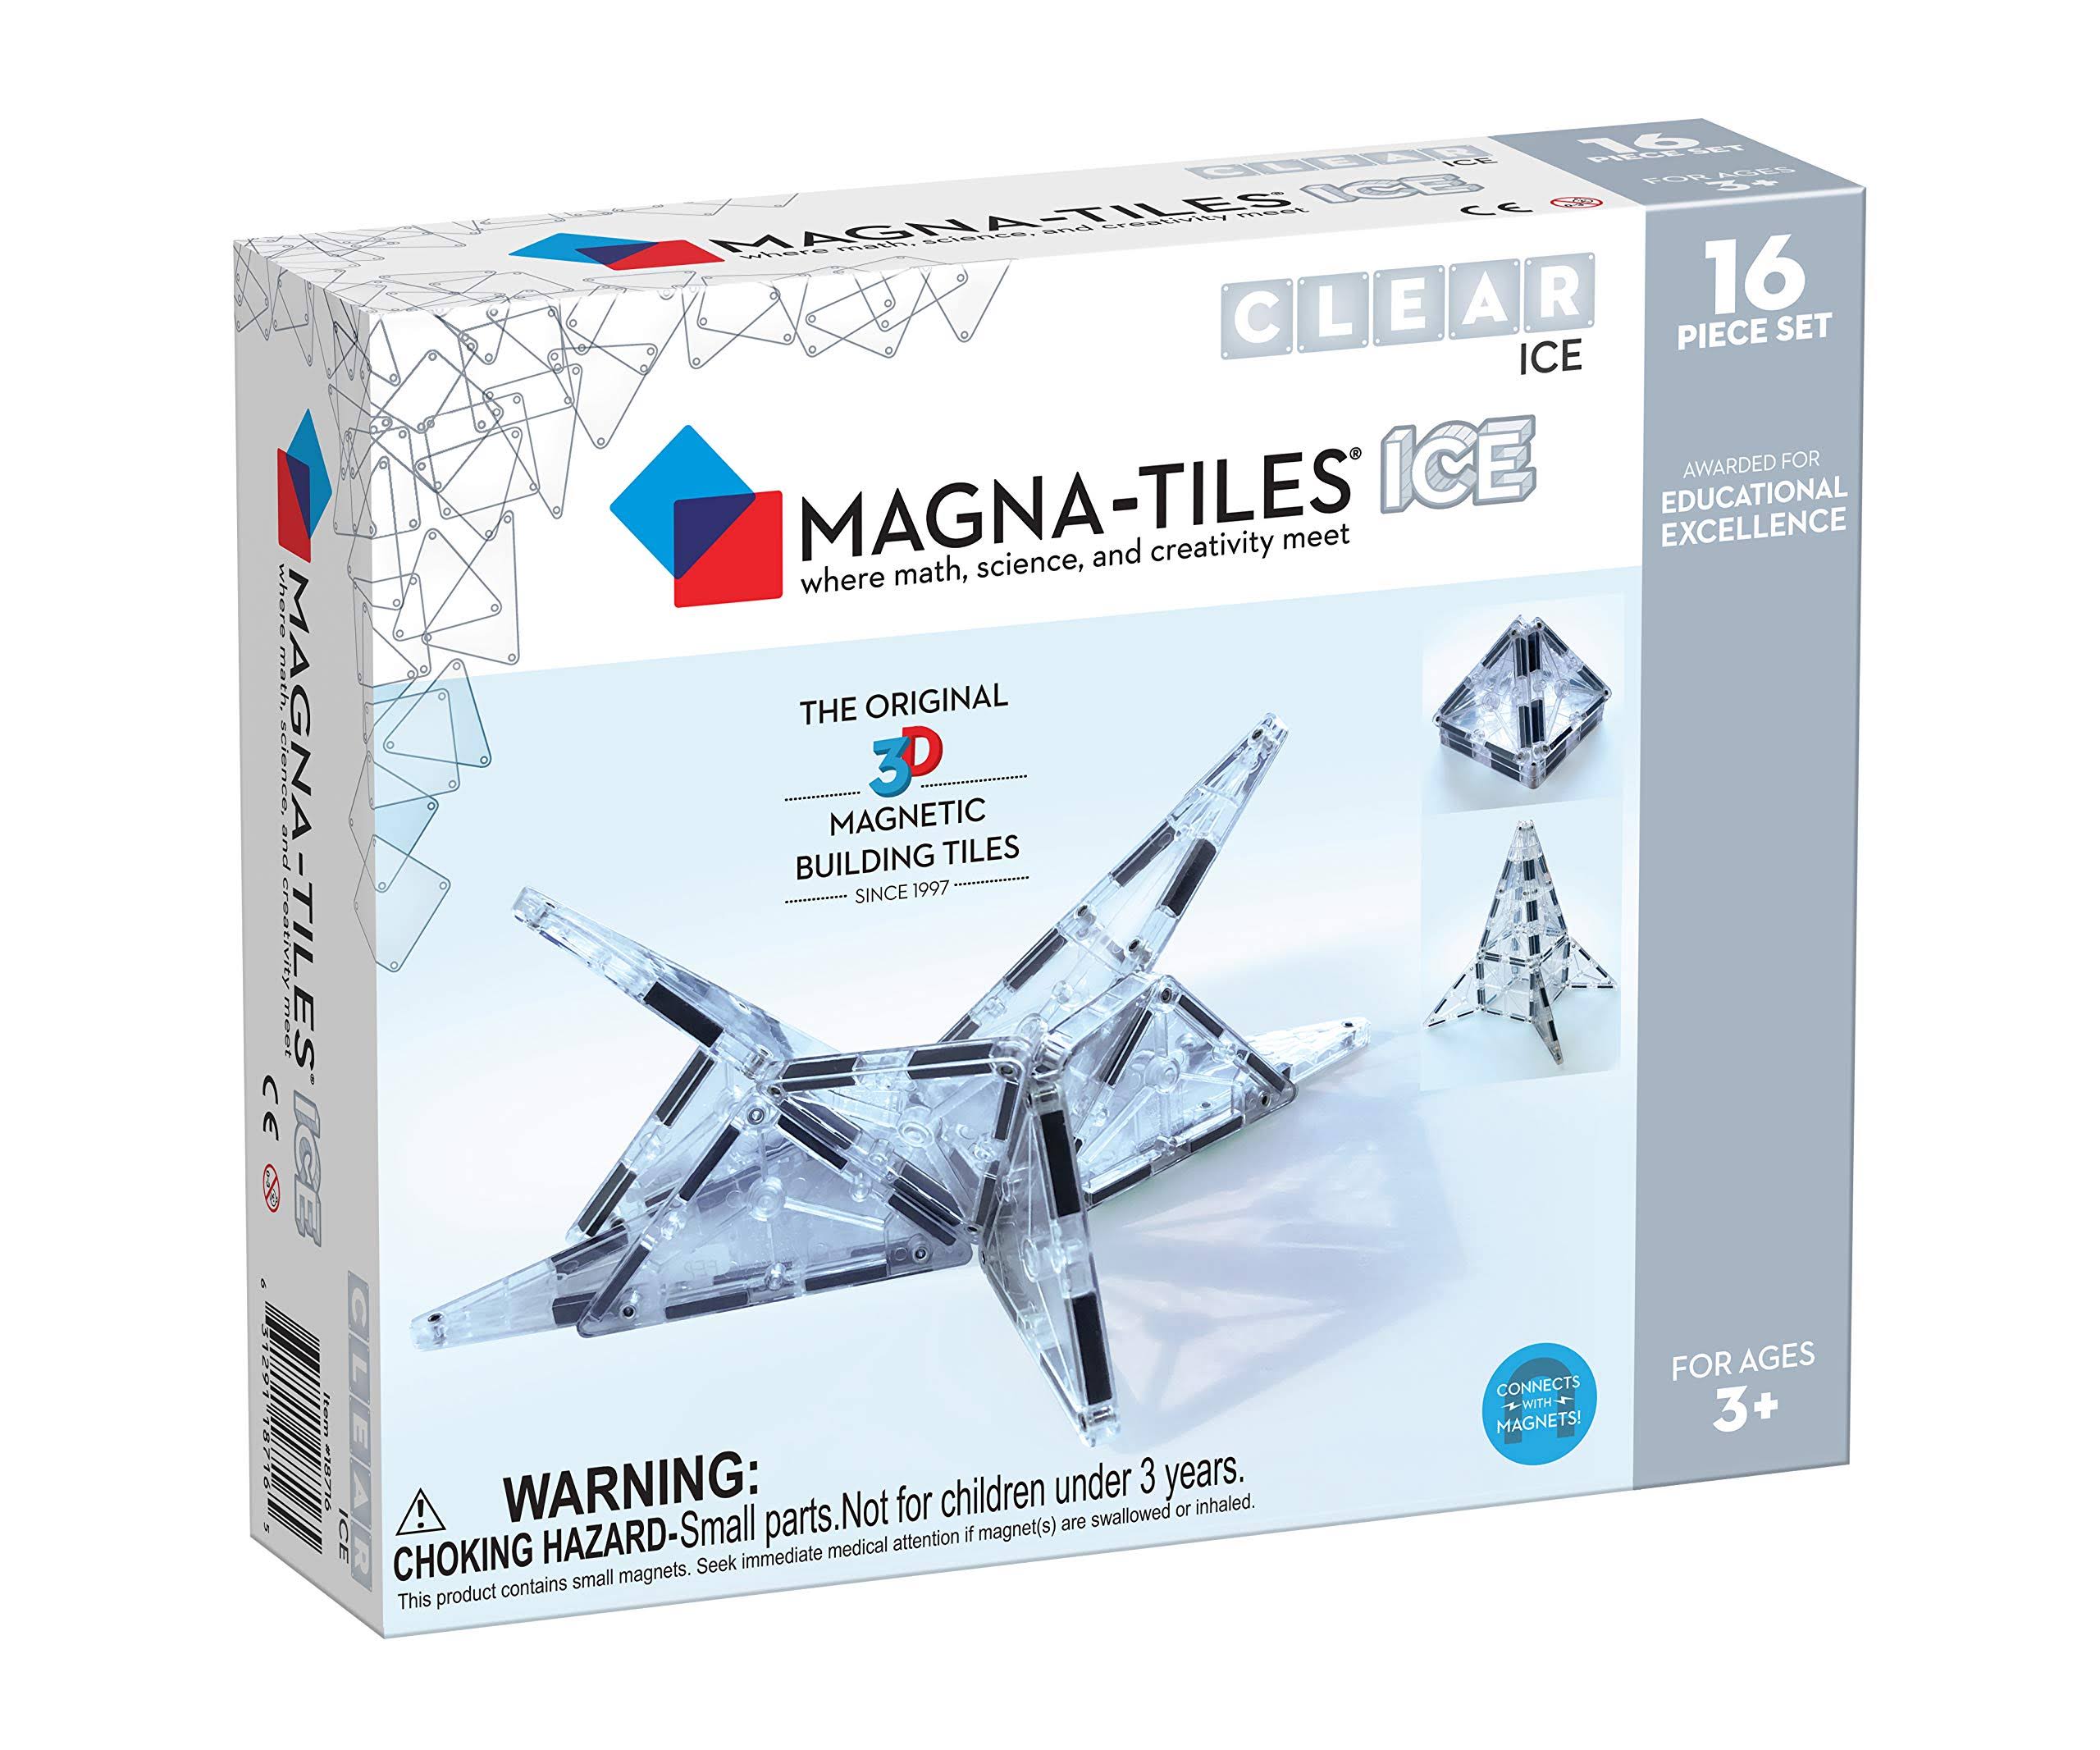 Magna Tiles 16 Piece Ice Set